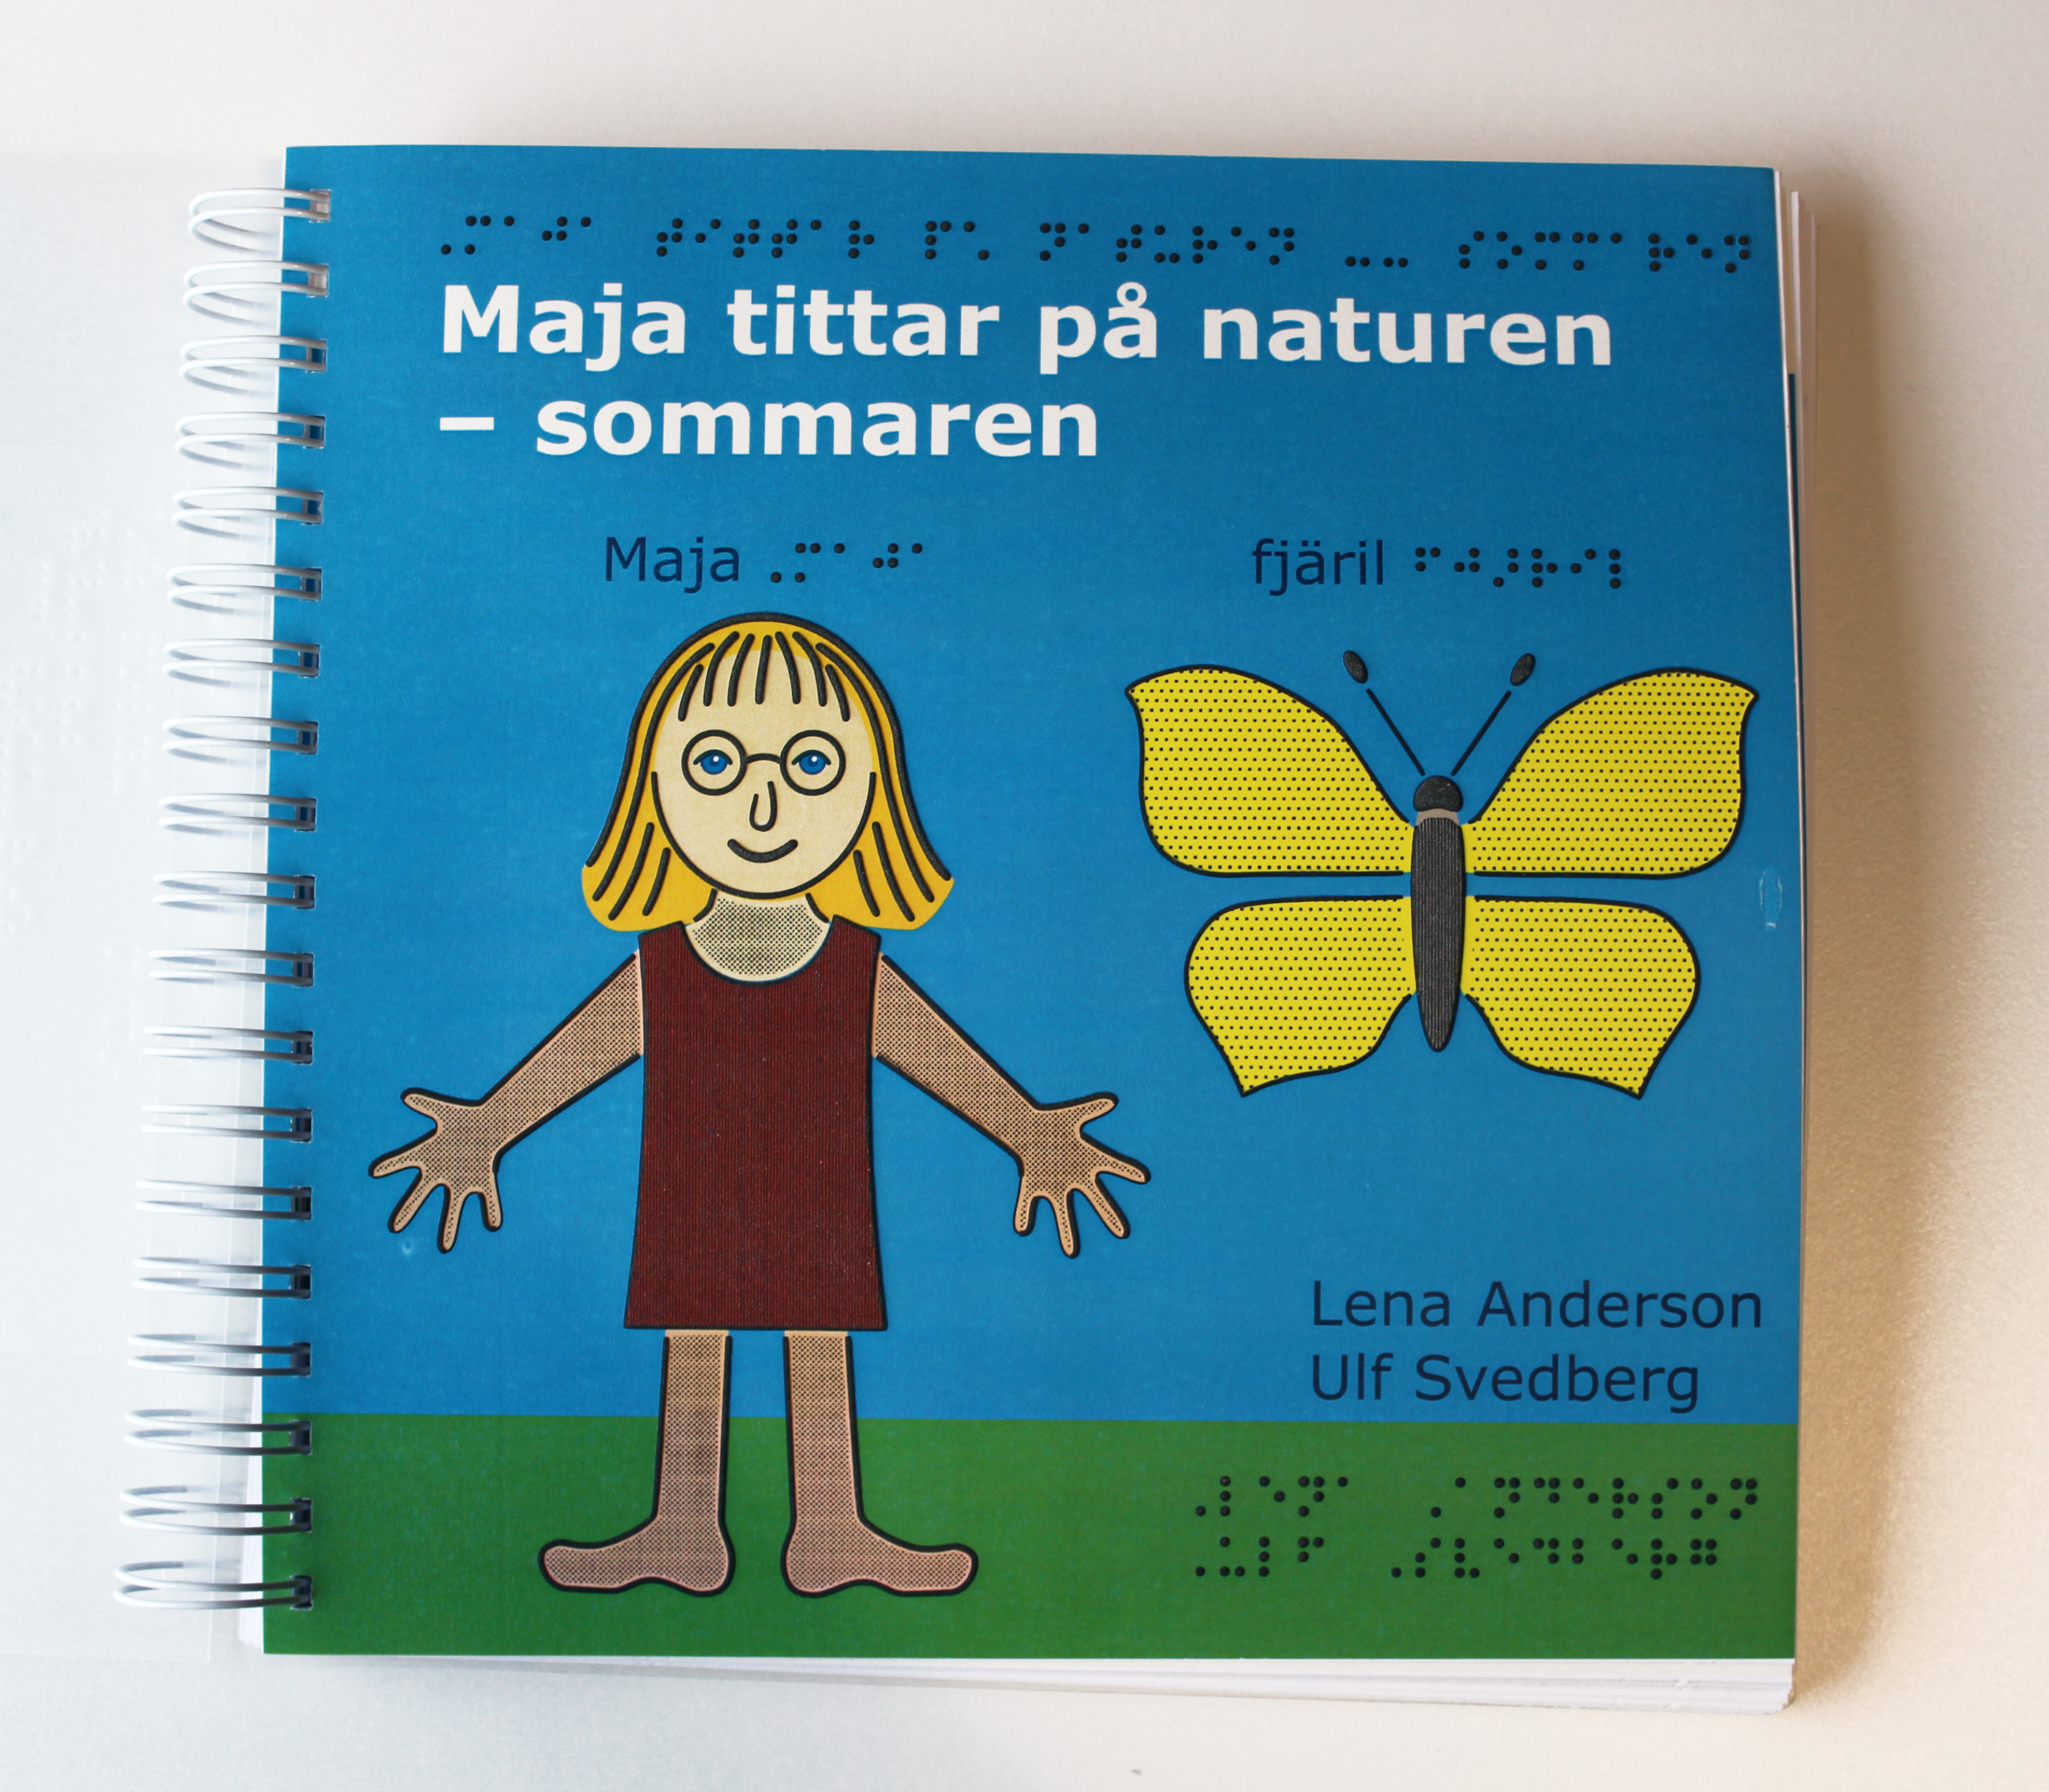 Bilden visar omslaget till den taktila boken. Omslaget visar en blå bakgrund. Det finns också en tjej med bruna kläder och en gul fjäril.